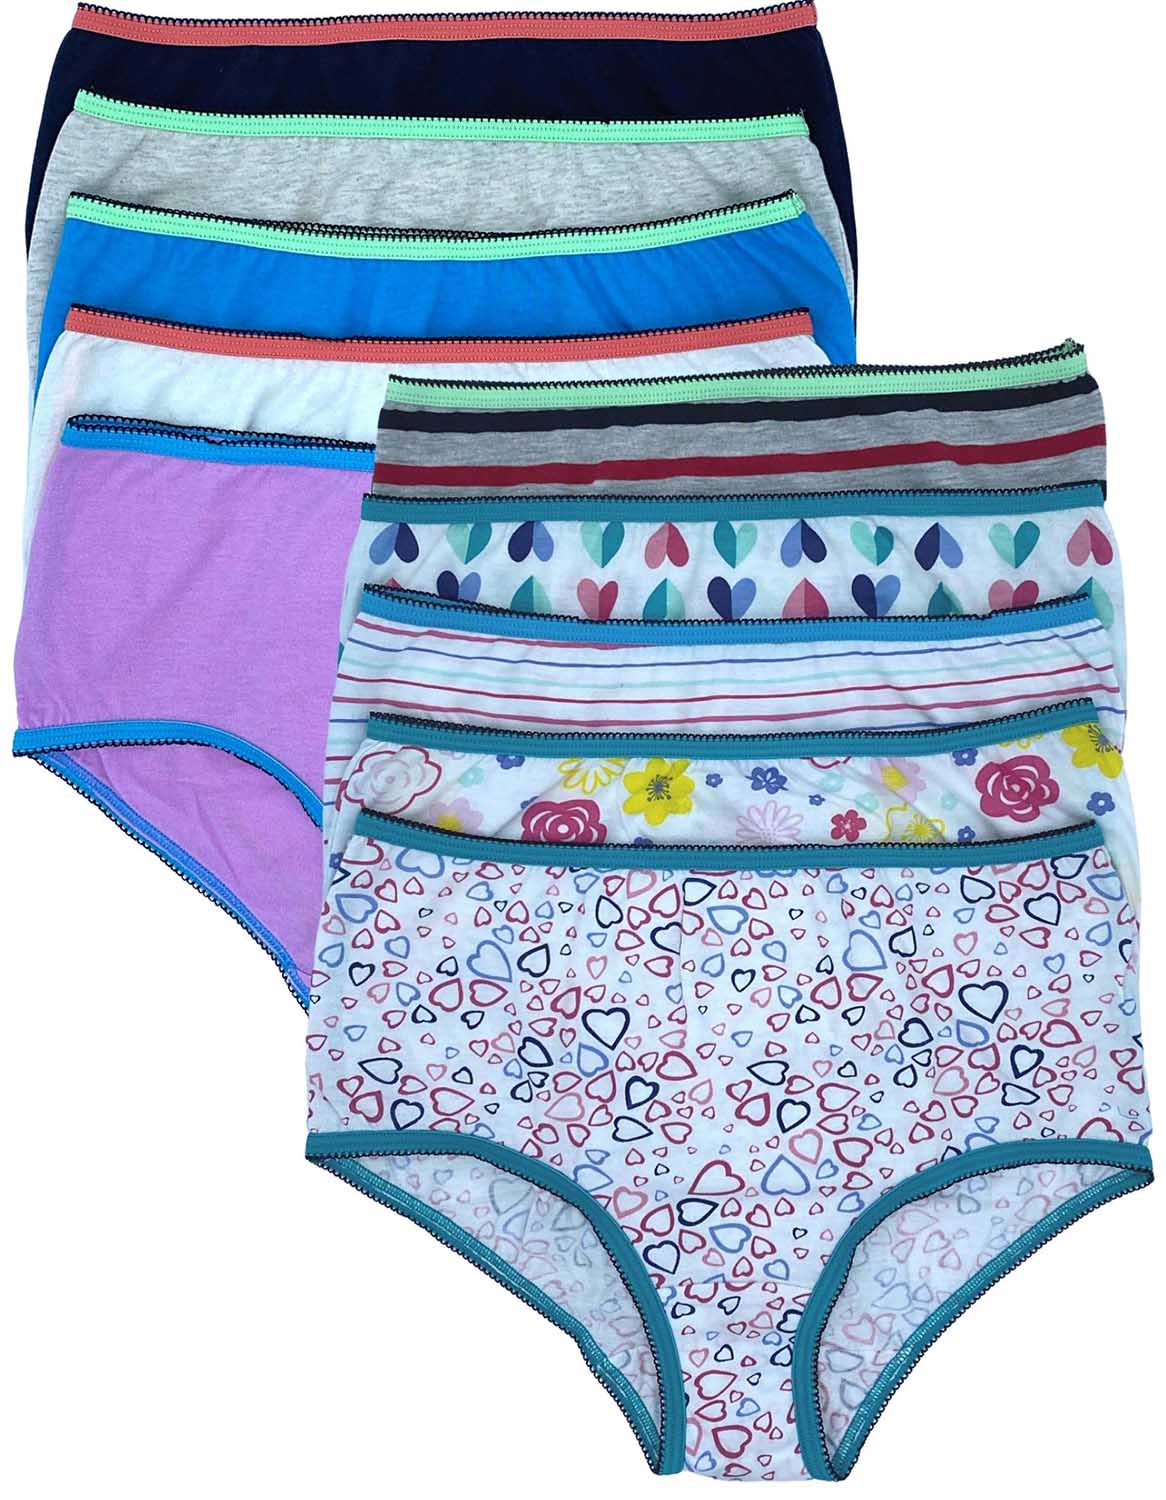 10-PACK Hanes Panties Girls Sz 10 Assorted Underwear 100% Cotton